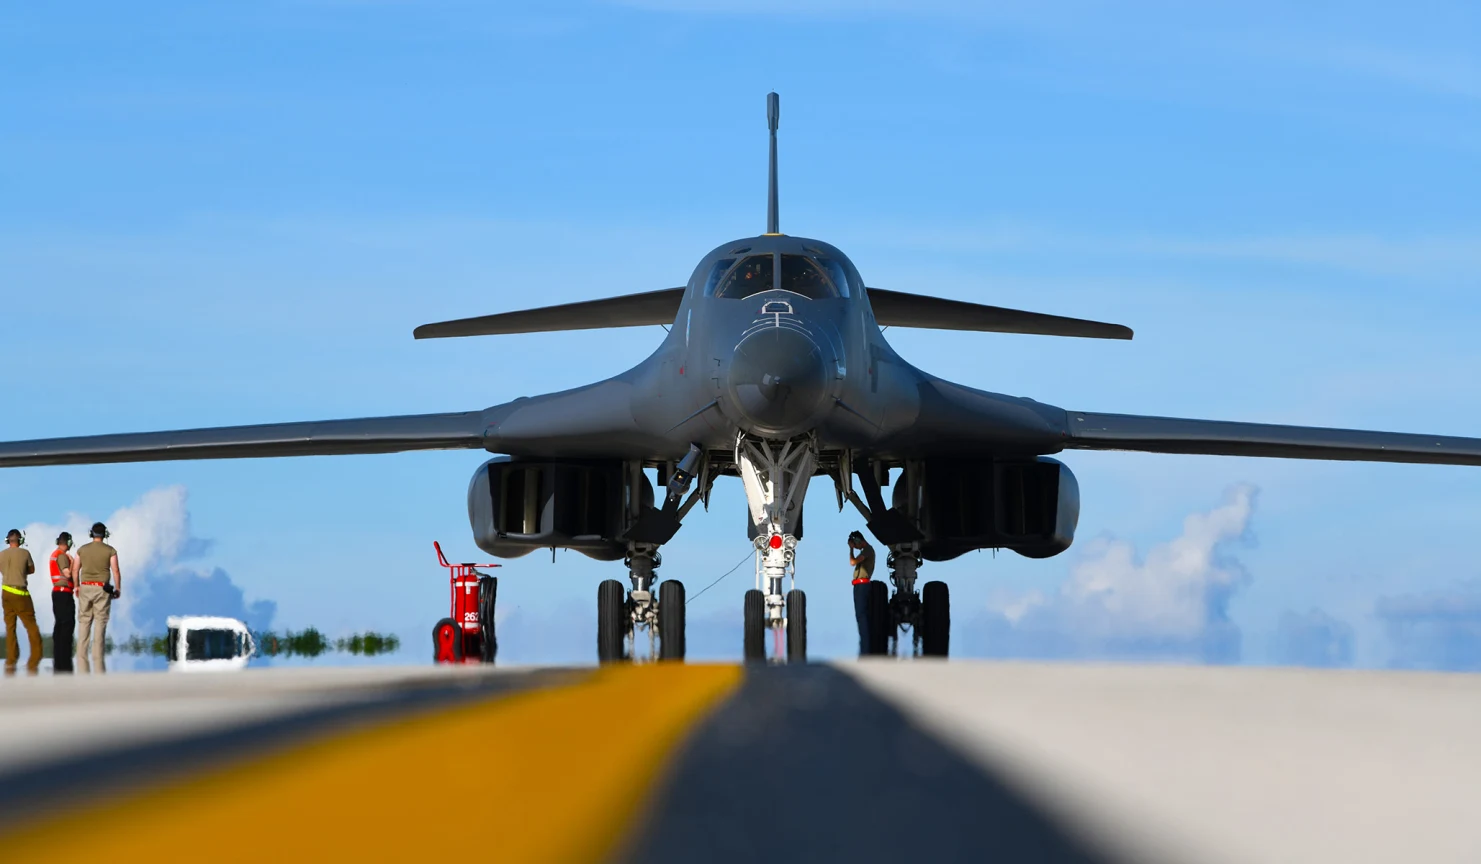 L'aeronautica statunitense vuole mandare in pensione il primo bombardiere strategico supersonico B-1B Lancer a partire dal 2021 - tutti gli aerei saranno ritirati entro i primi anni Trenta